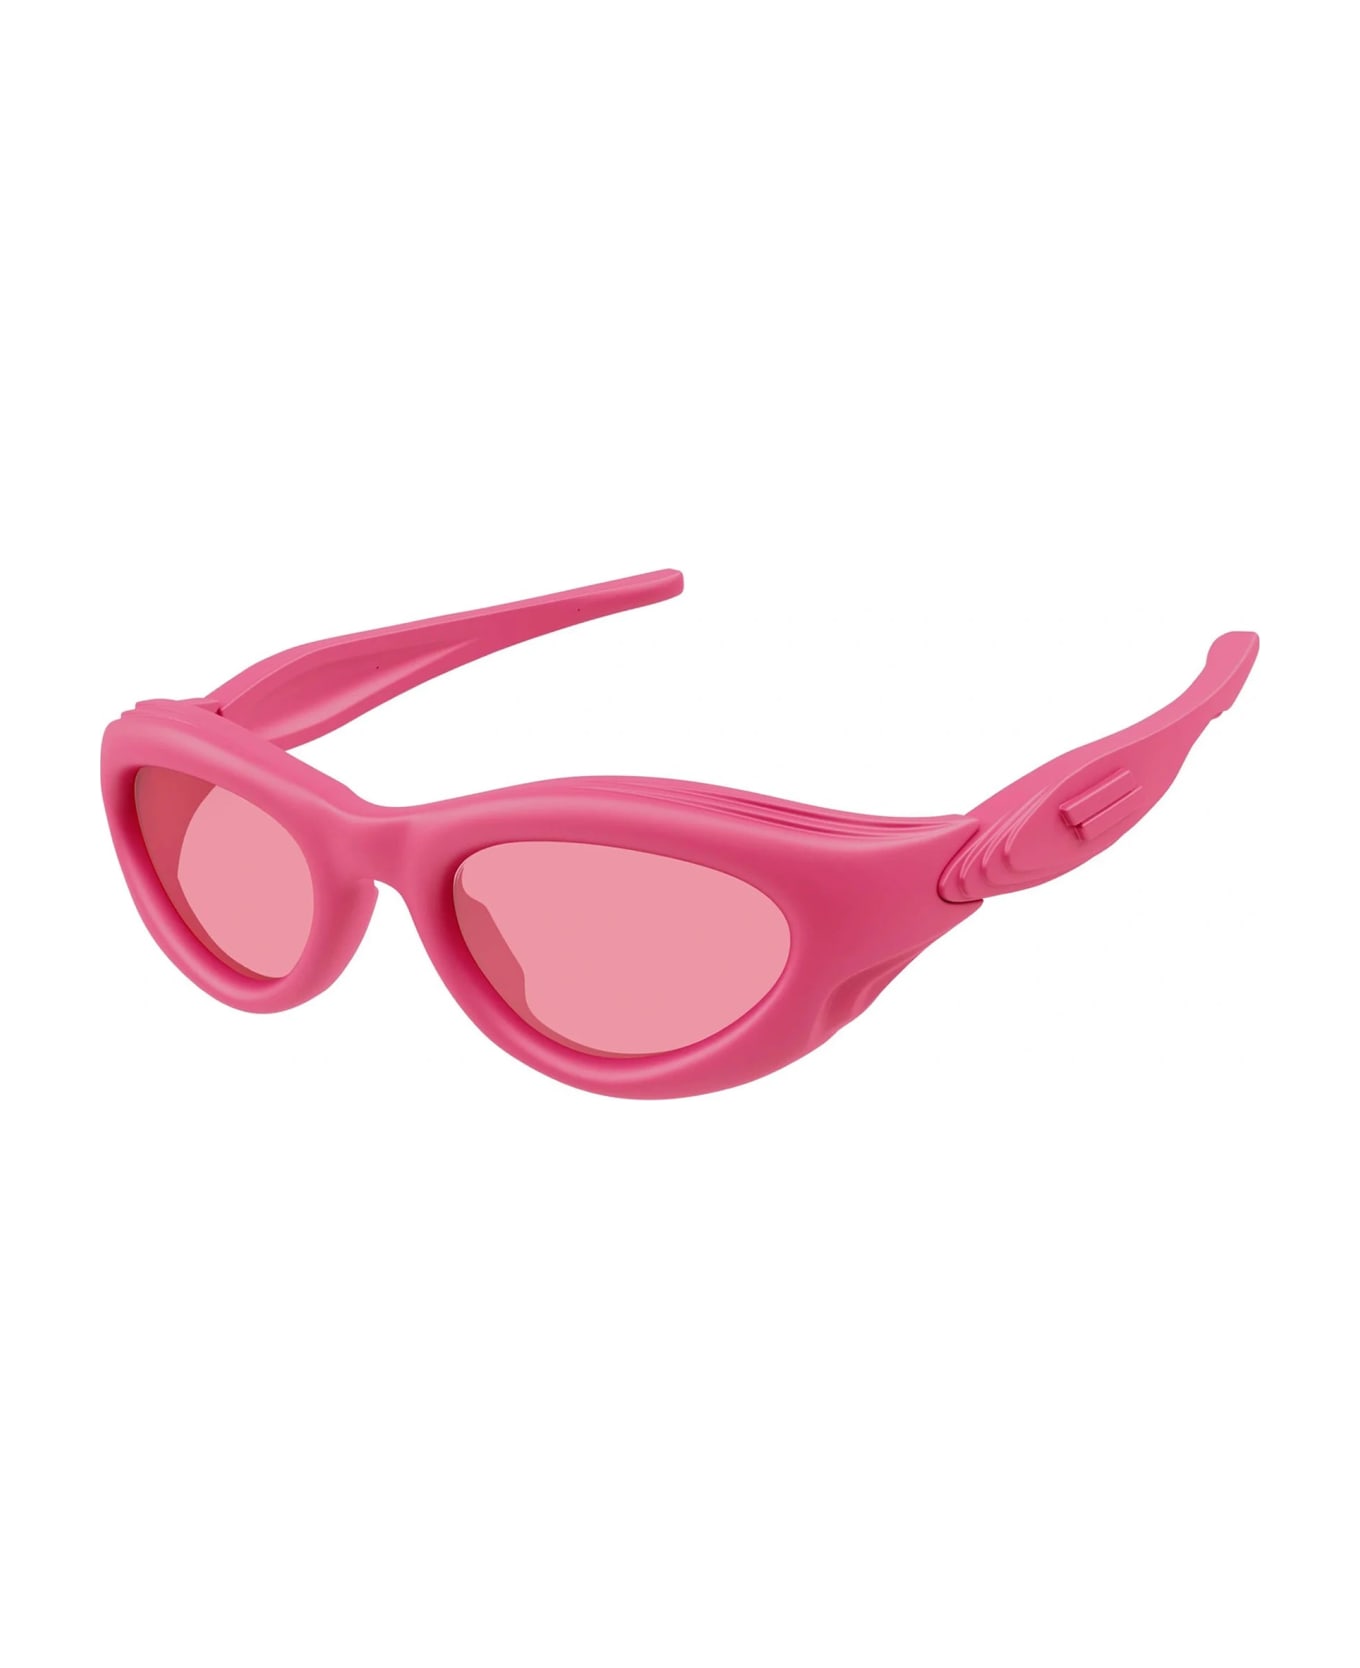 Bottega Veneta Eyewear Bv1162s-001 - Pink Sunglasses - pink